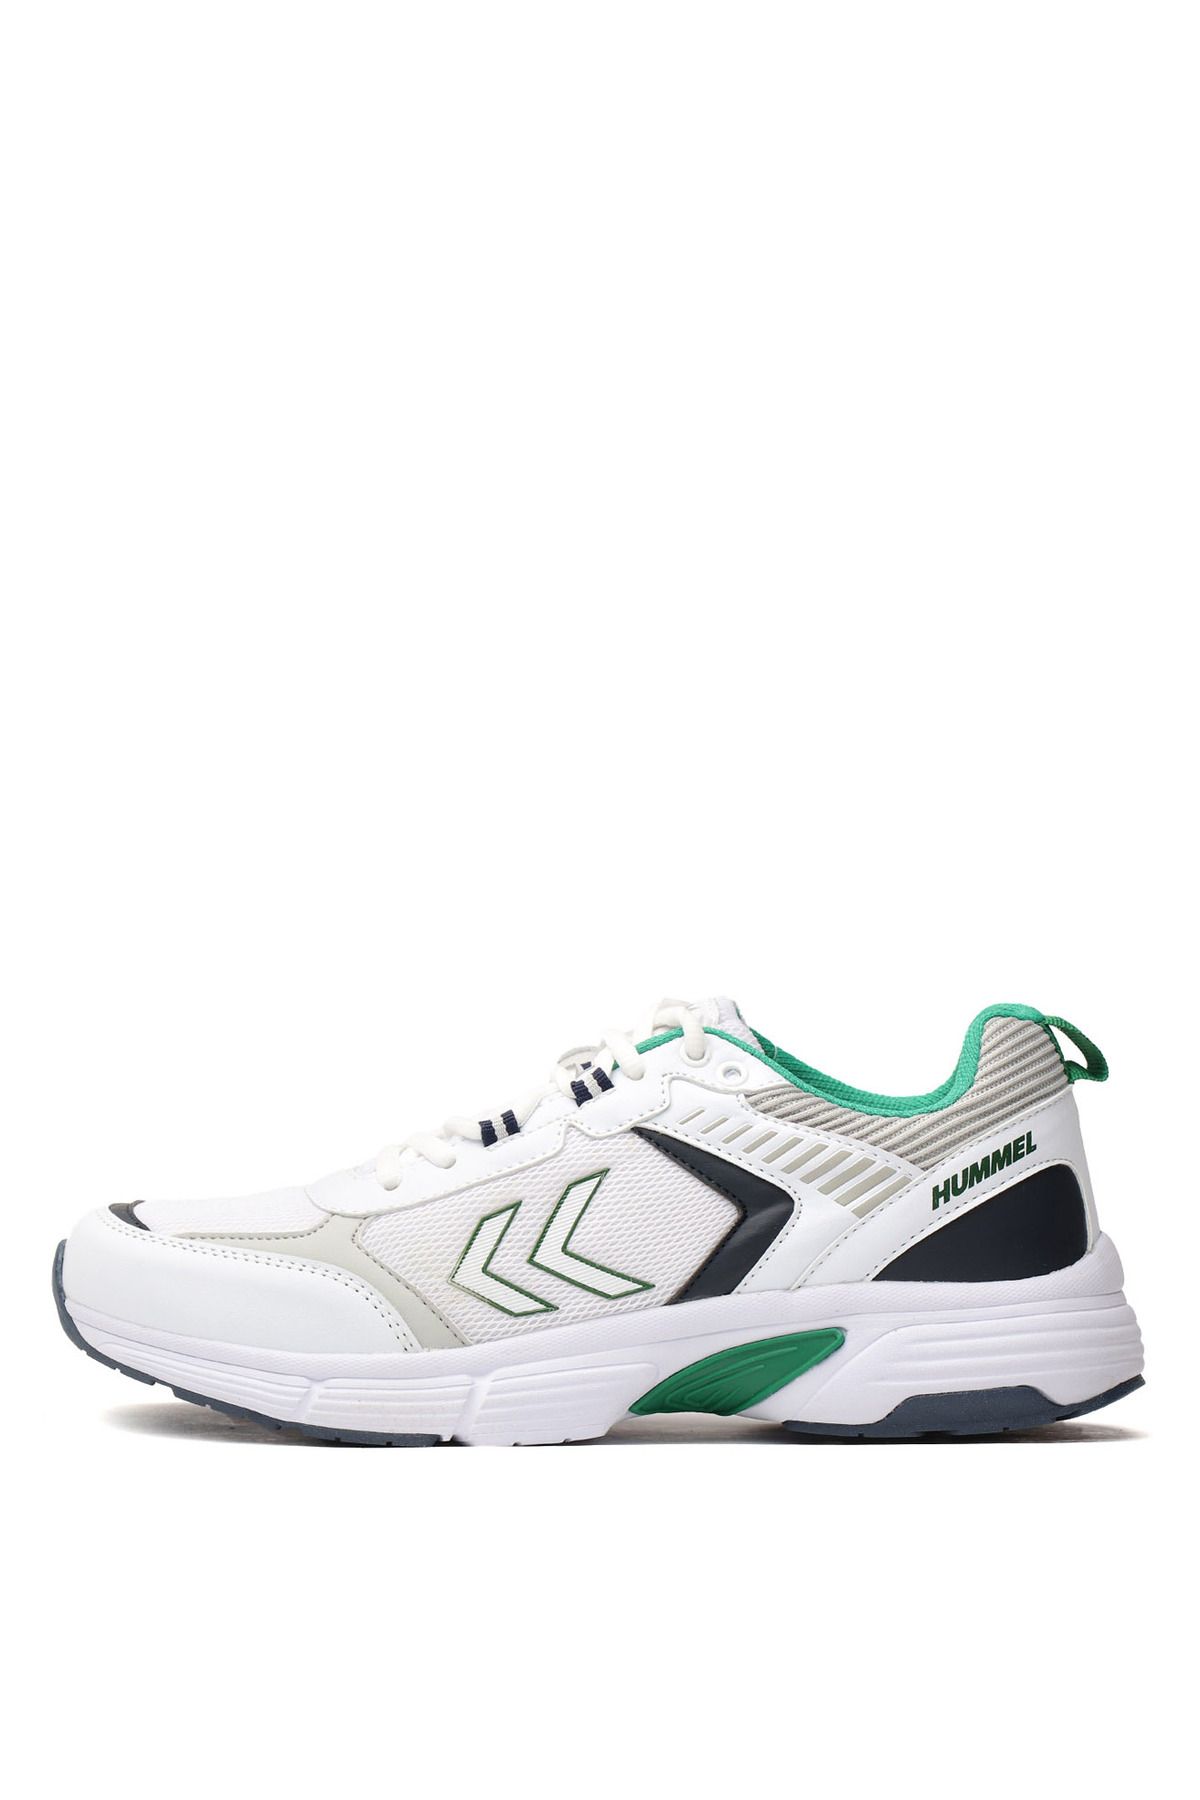 hummel Beyaz - Yeşil Erkek Training Ayakkabısı 900362-9208 HML PERA